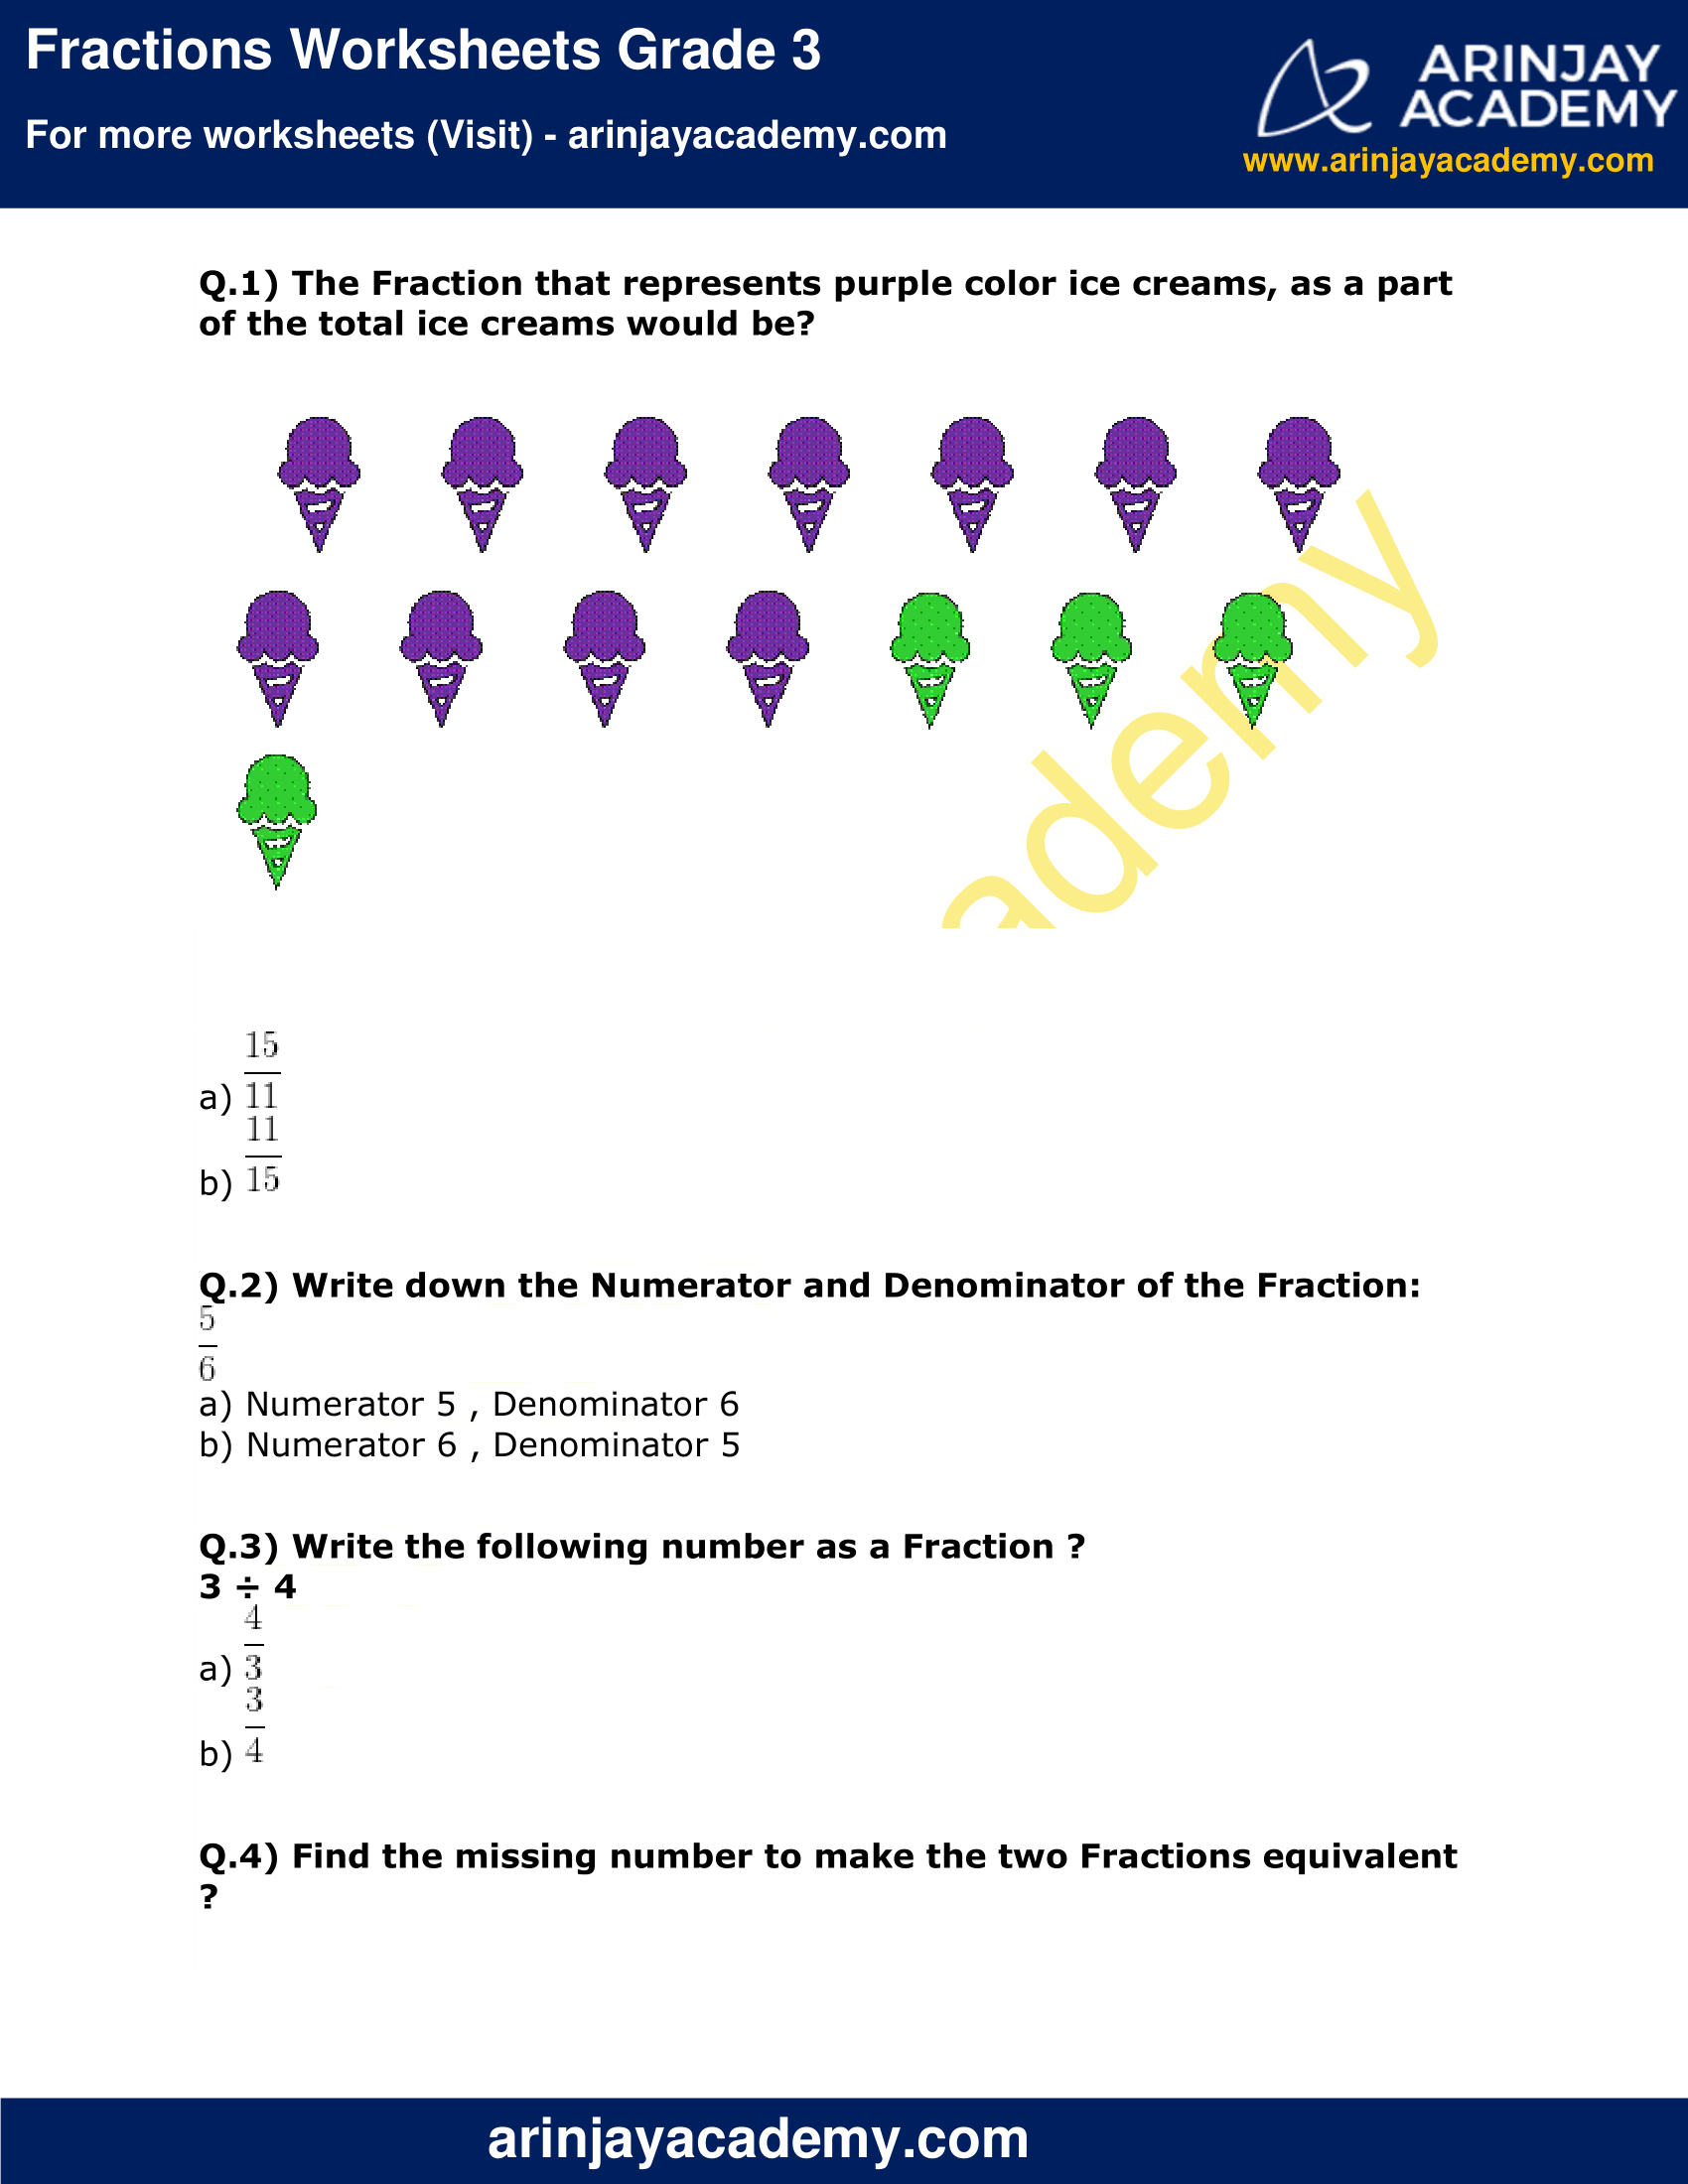 Fractions Worksheets Grade 3 image 1